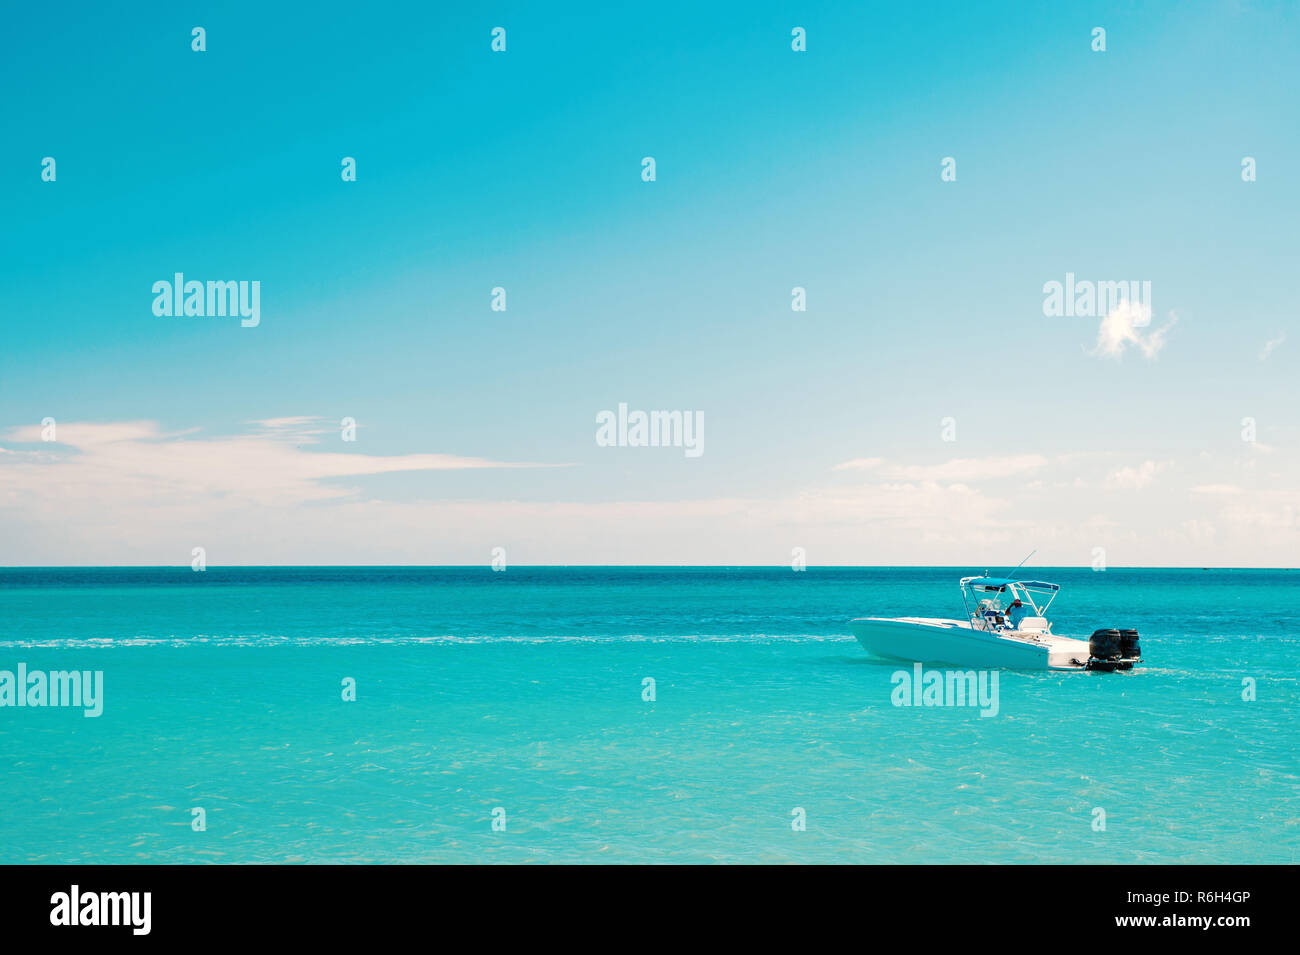 Il lusso di passare una vacanza sul mare. Esotiche della bellissima spiaggia di Marina di Antigua St. Johns con yacht barca in acqua blu e il cielo con le nuvole di piccole dimensioni Foto Stock